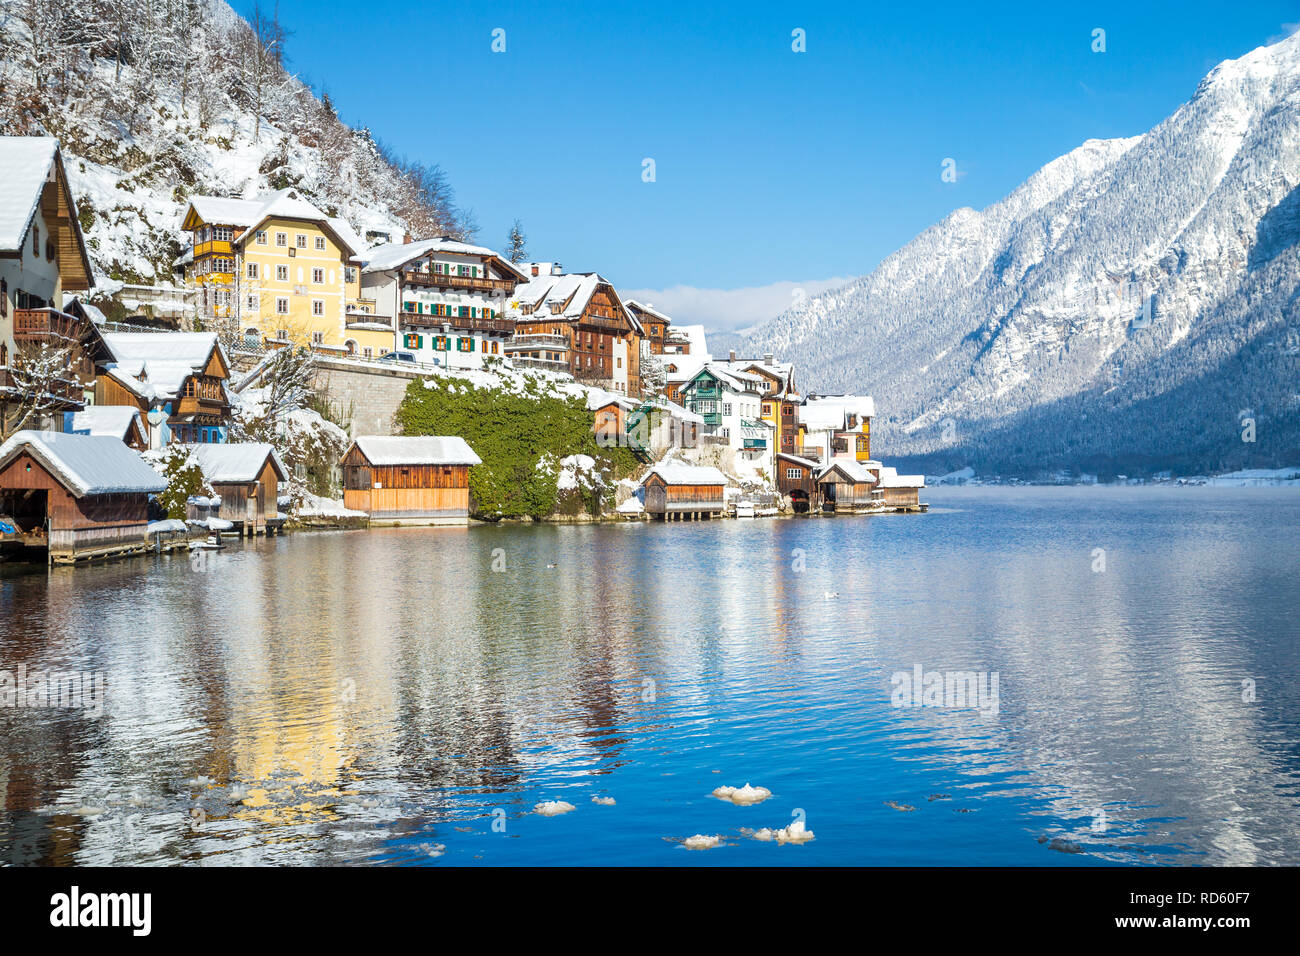 Maisons traditionnelles dans la célèbre ville au bord du lac de Hallstatt froid sur une belle journée ensoleillée en hiver, région du Salzkammergut, Autriche Banque D'Images